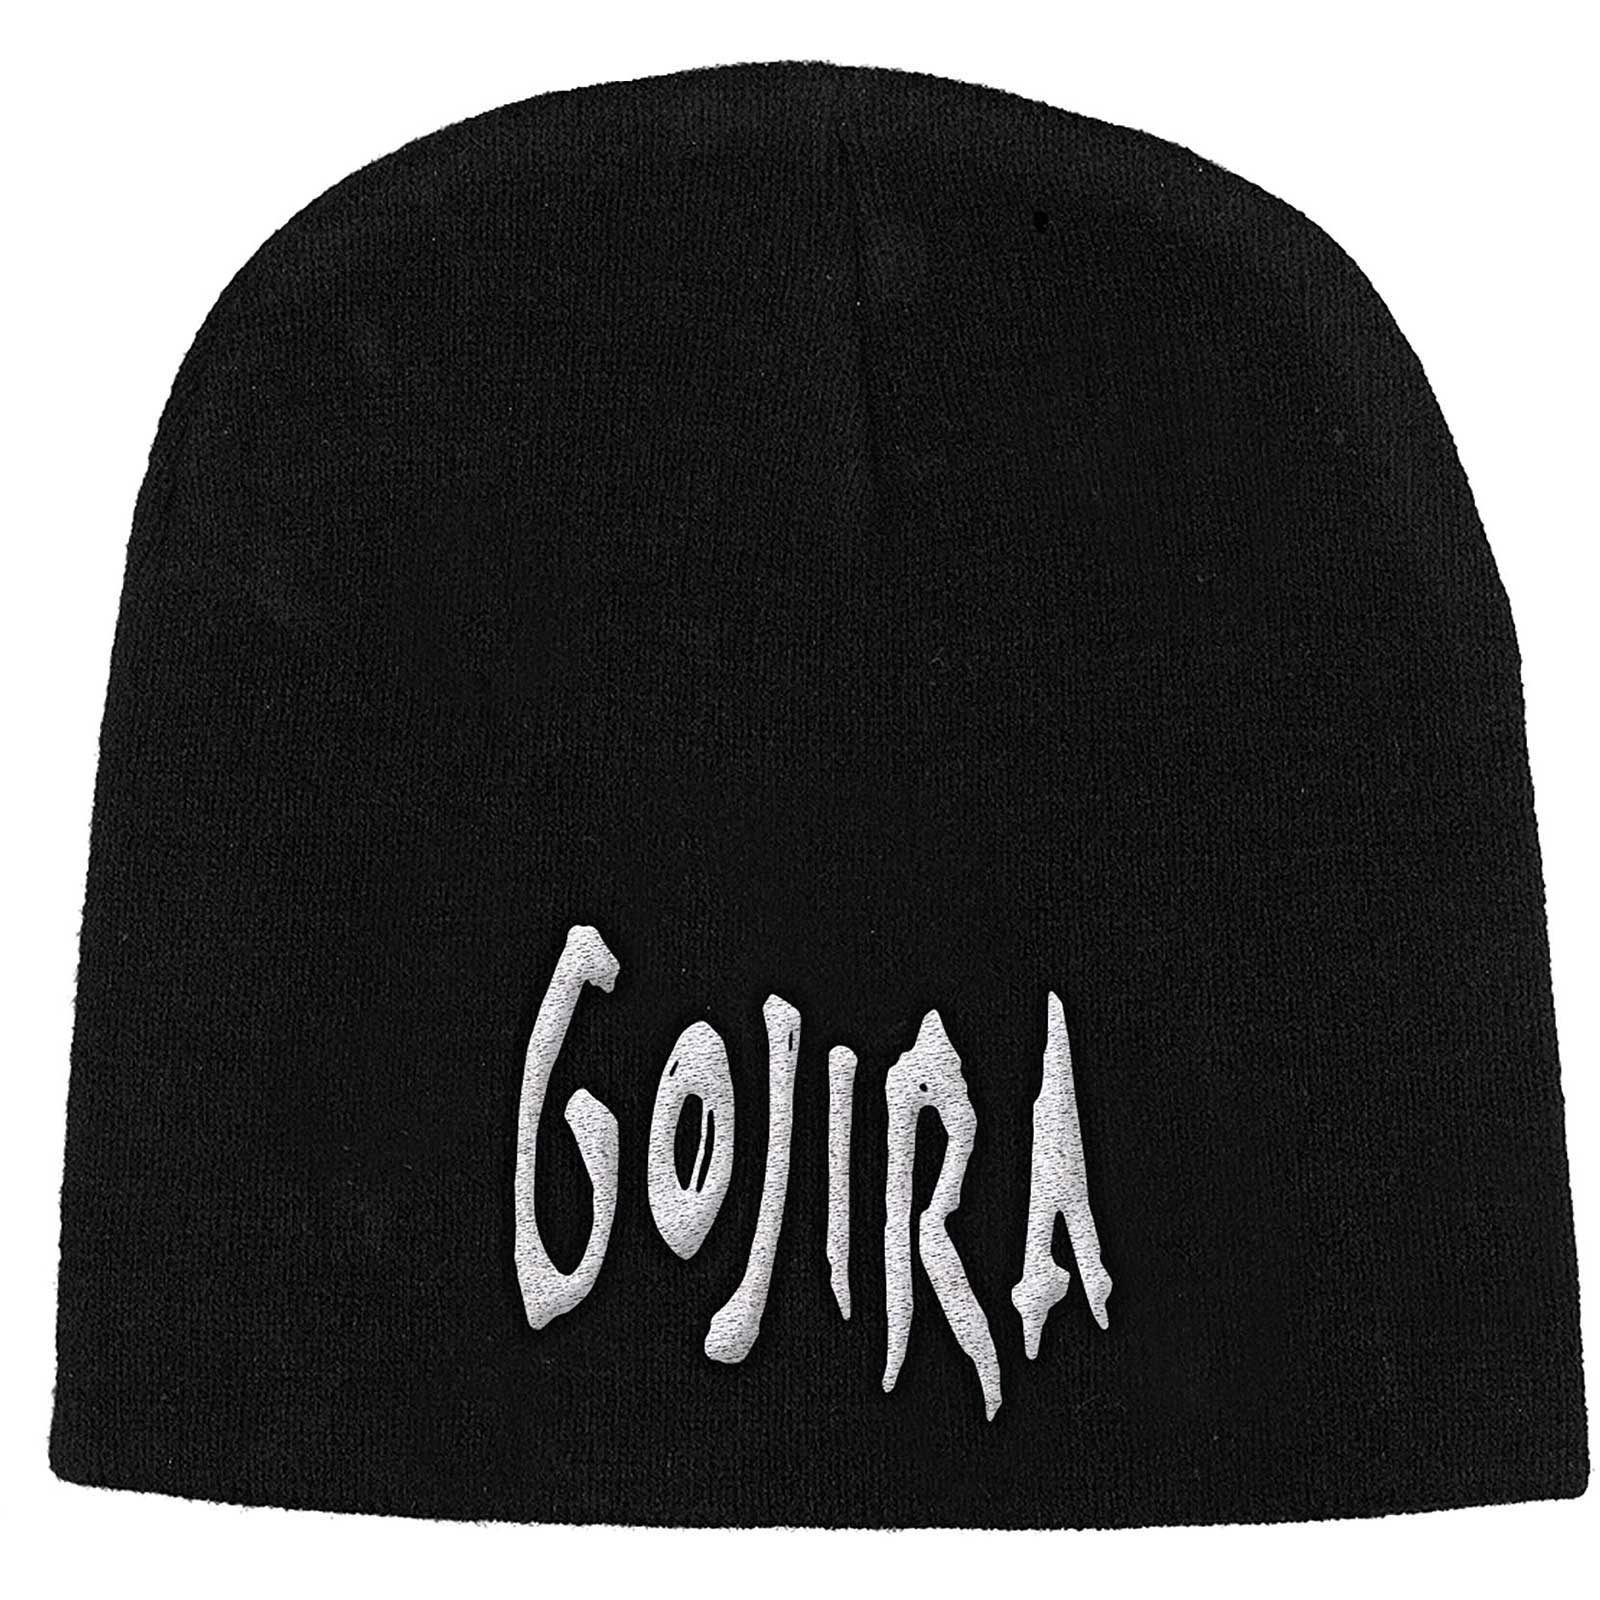 GOJIRA Logo